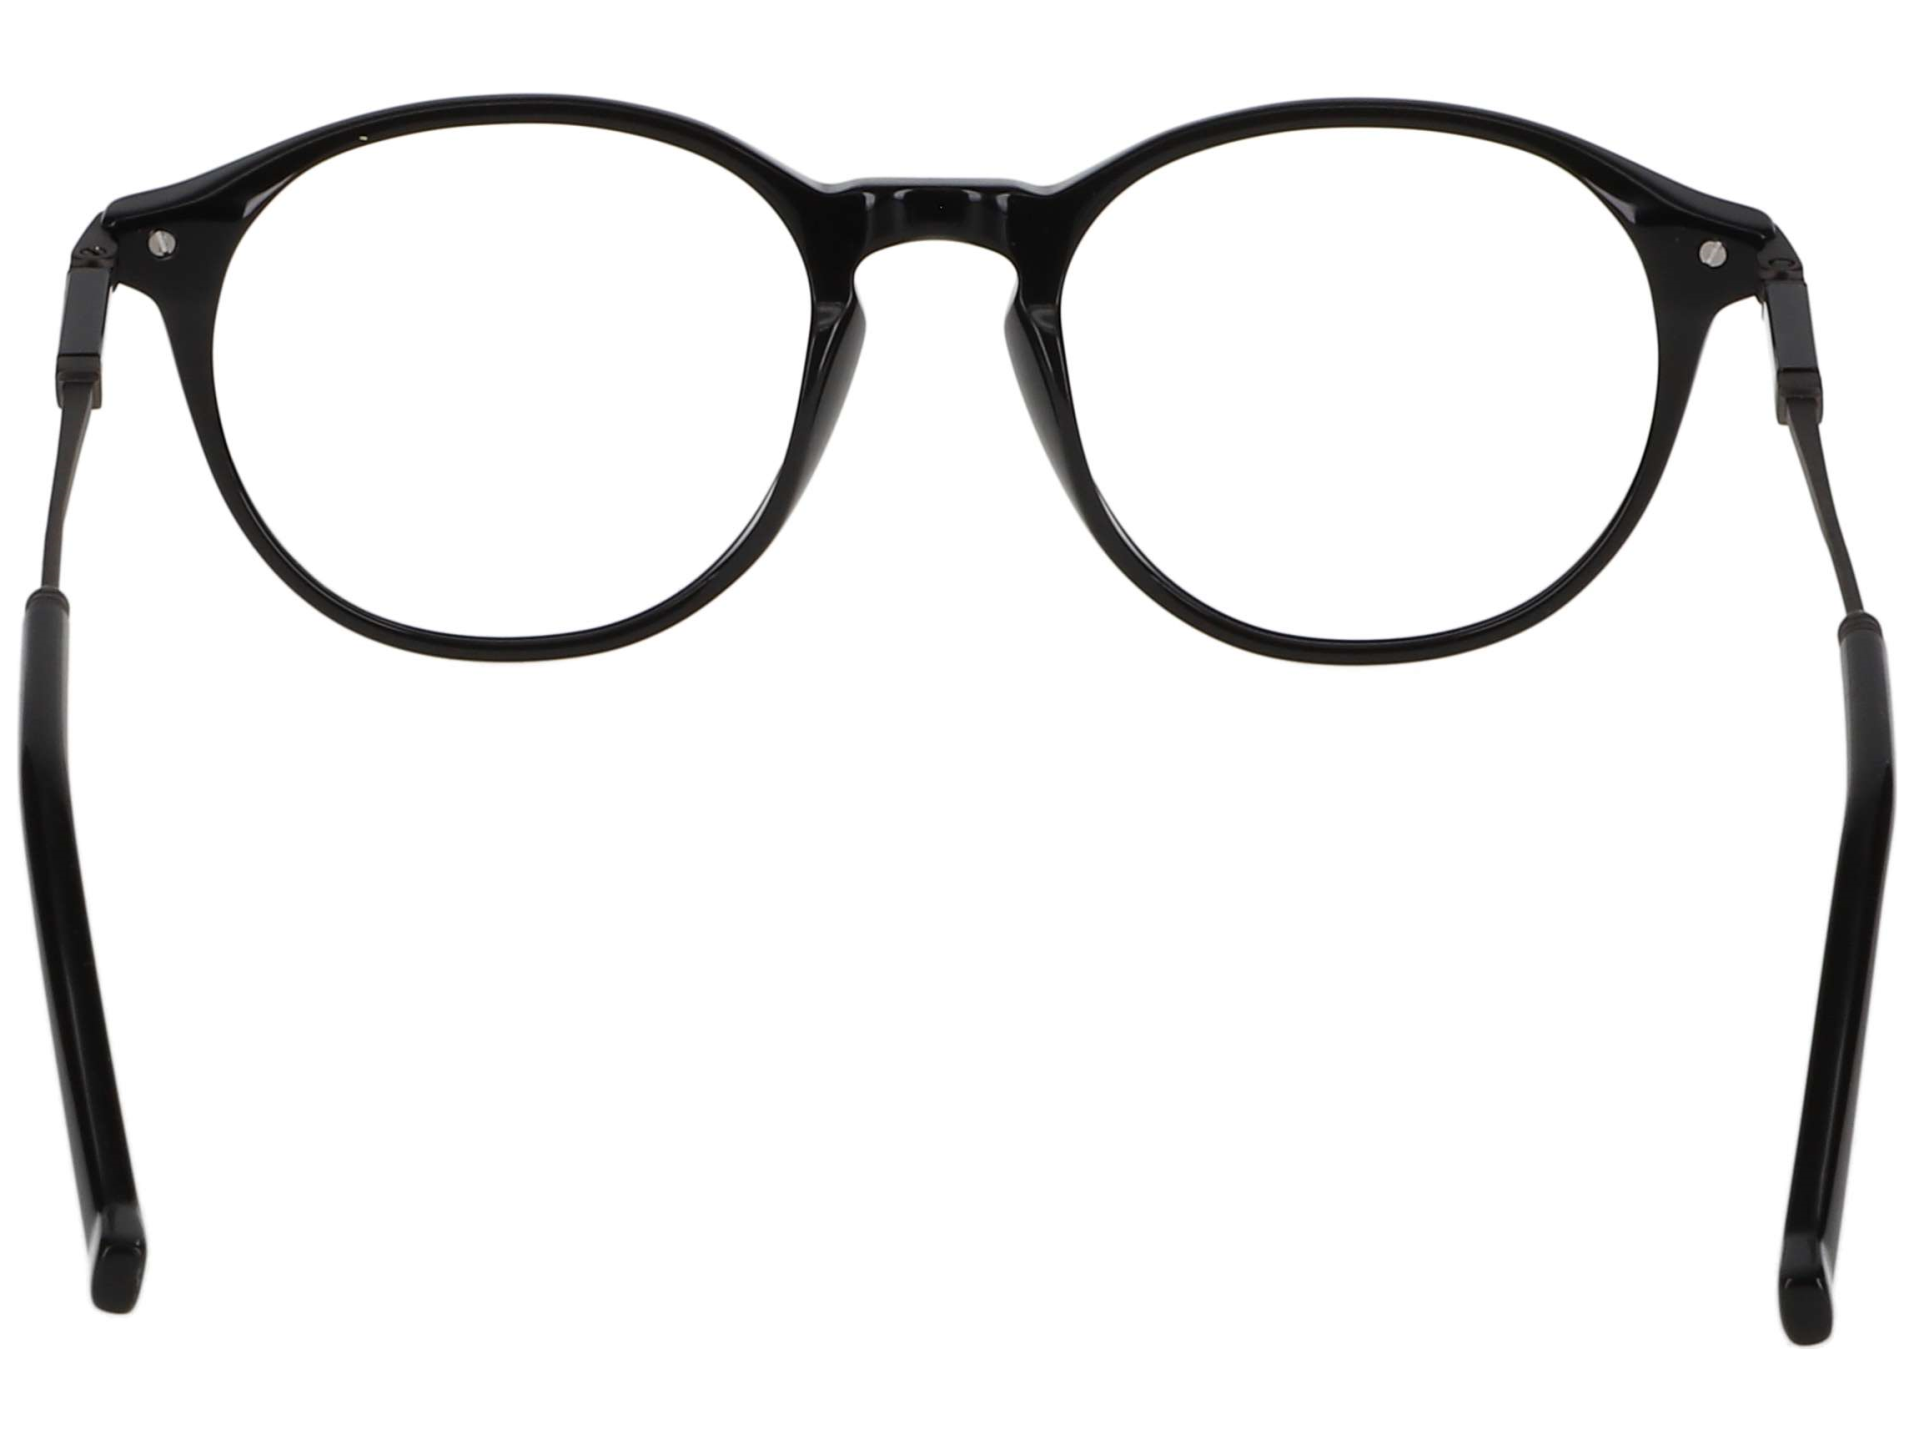 Das Bild zeigt die Korrektionsbrille 332 001 von der Marke Hackett in schwarz.